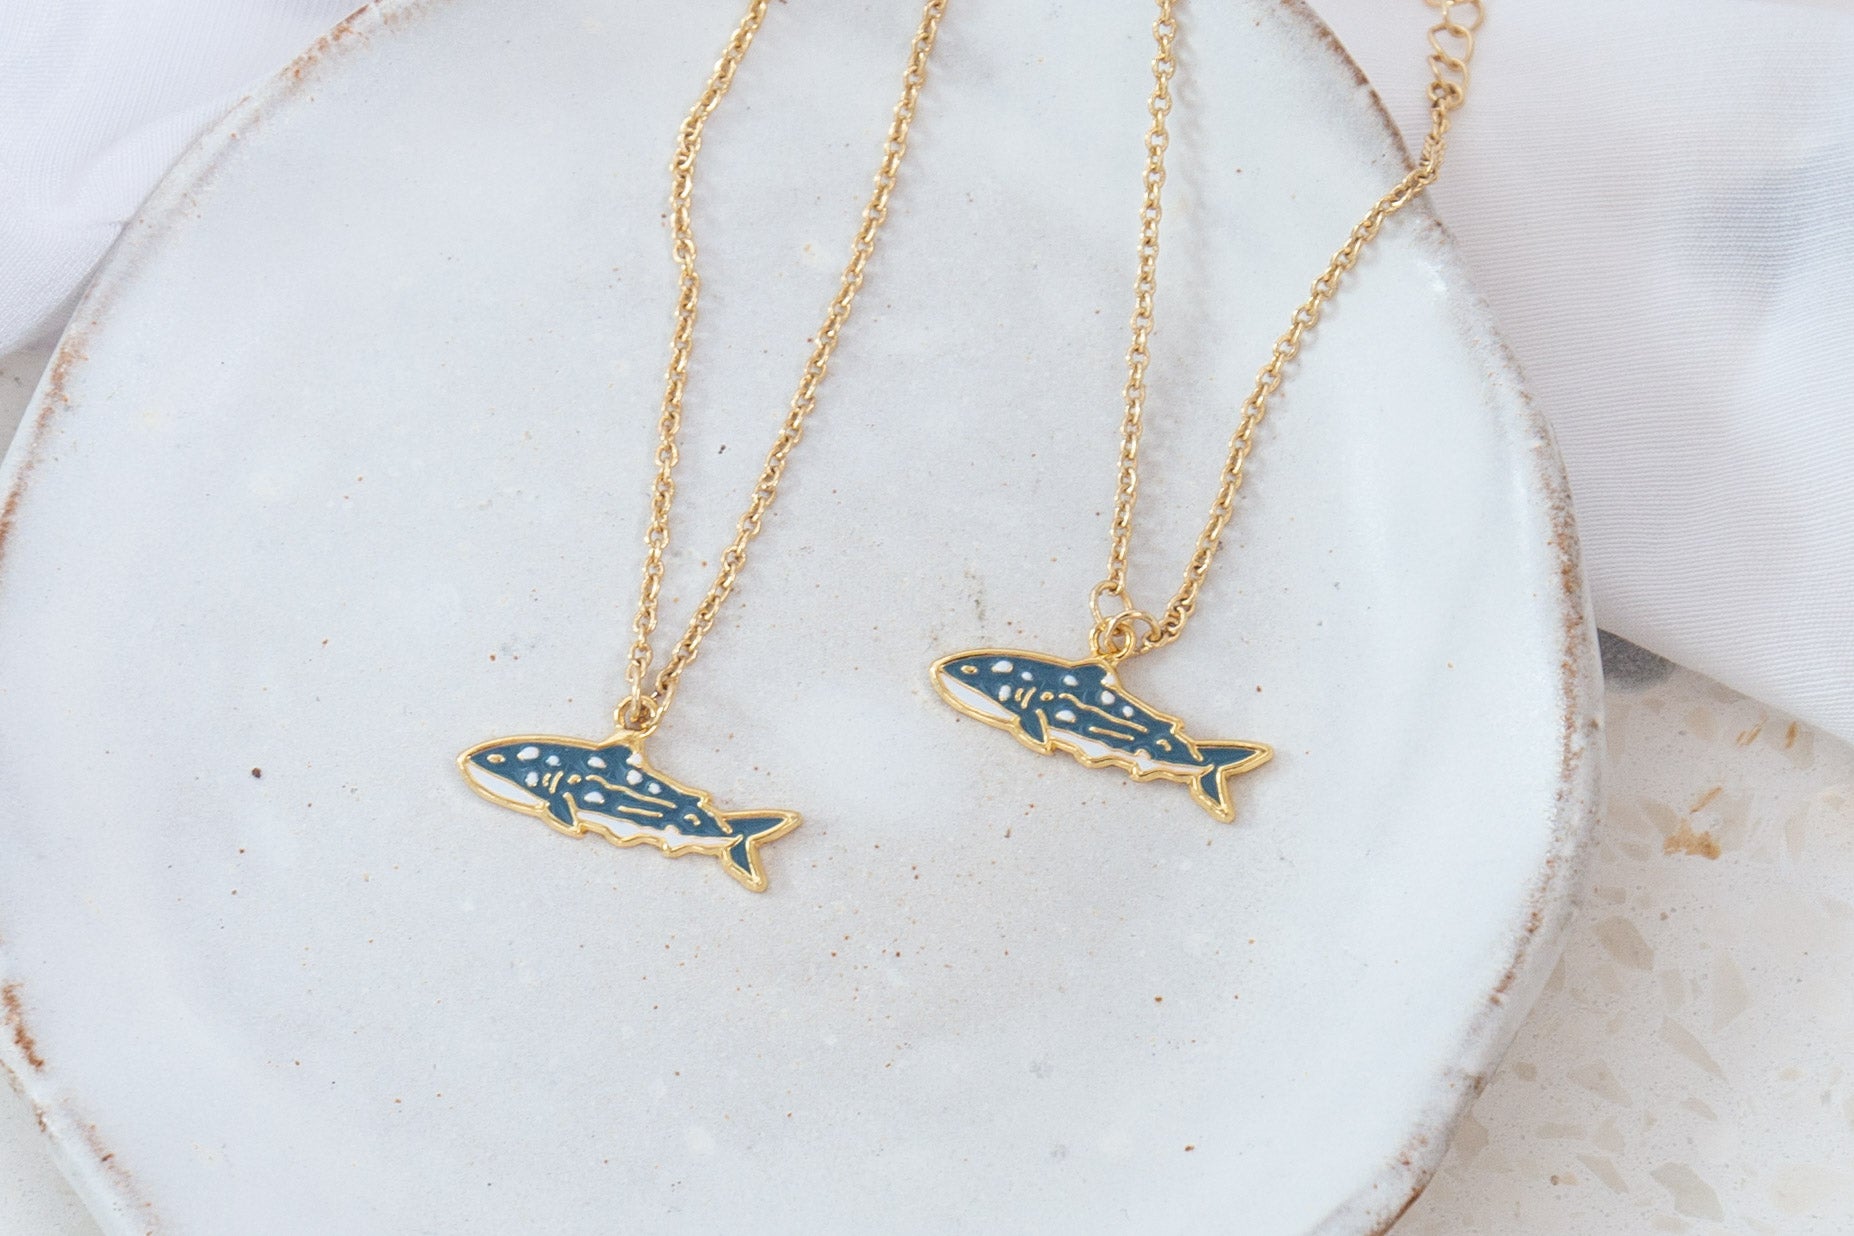 Whale Shark Enamel Earrings/ Bracelet/ Necklace